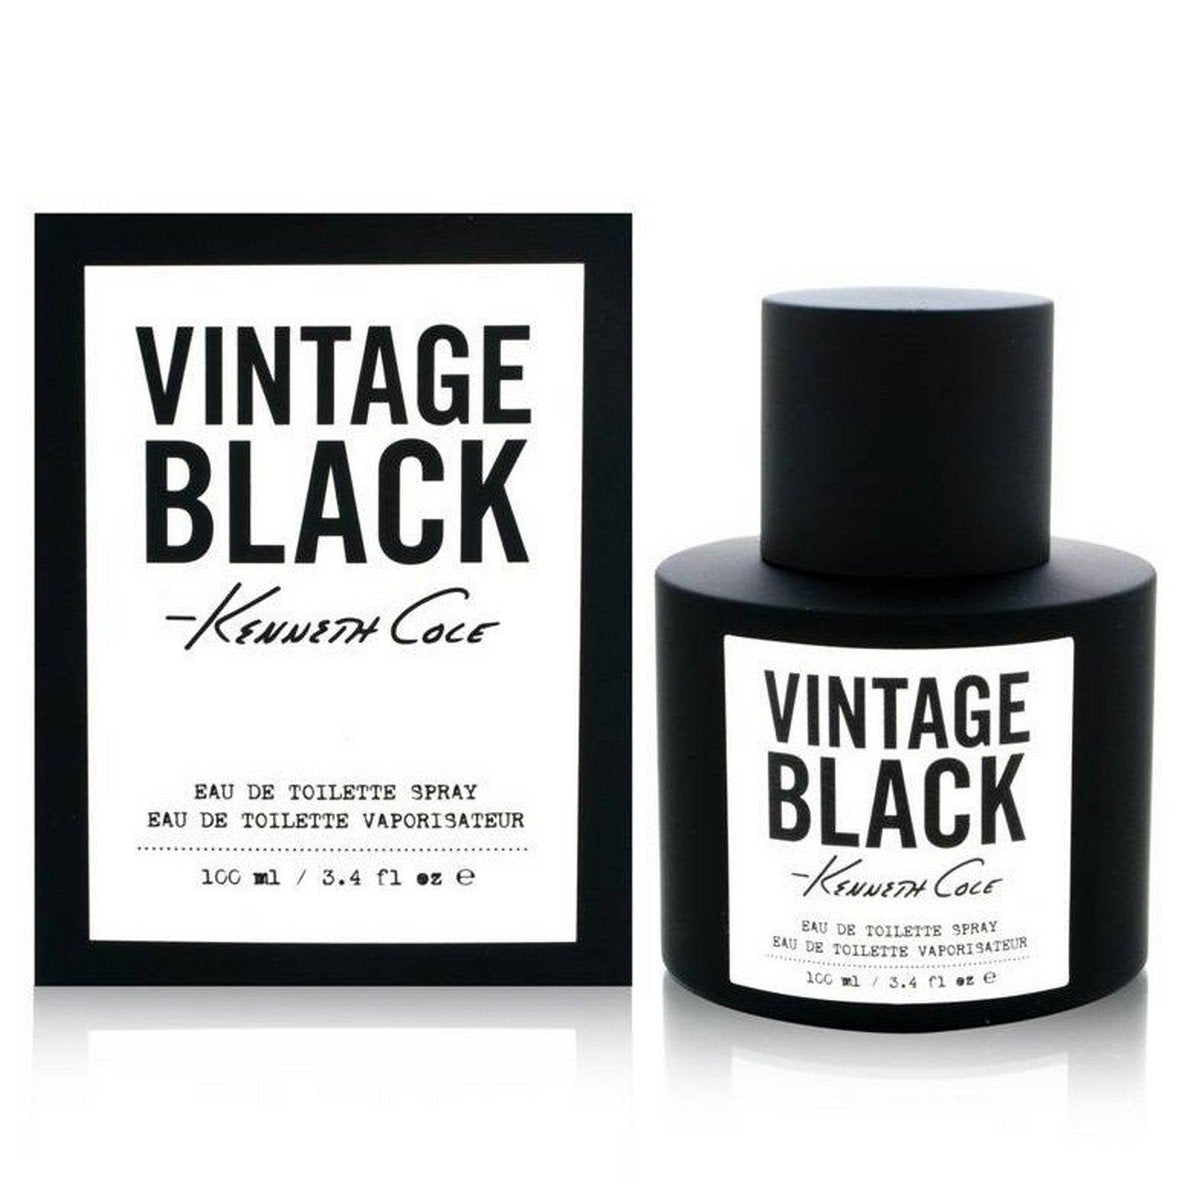 Kenneth Cole Vintage Black for Men 100ml EDT Spray